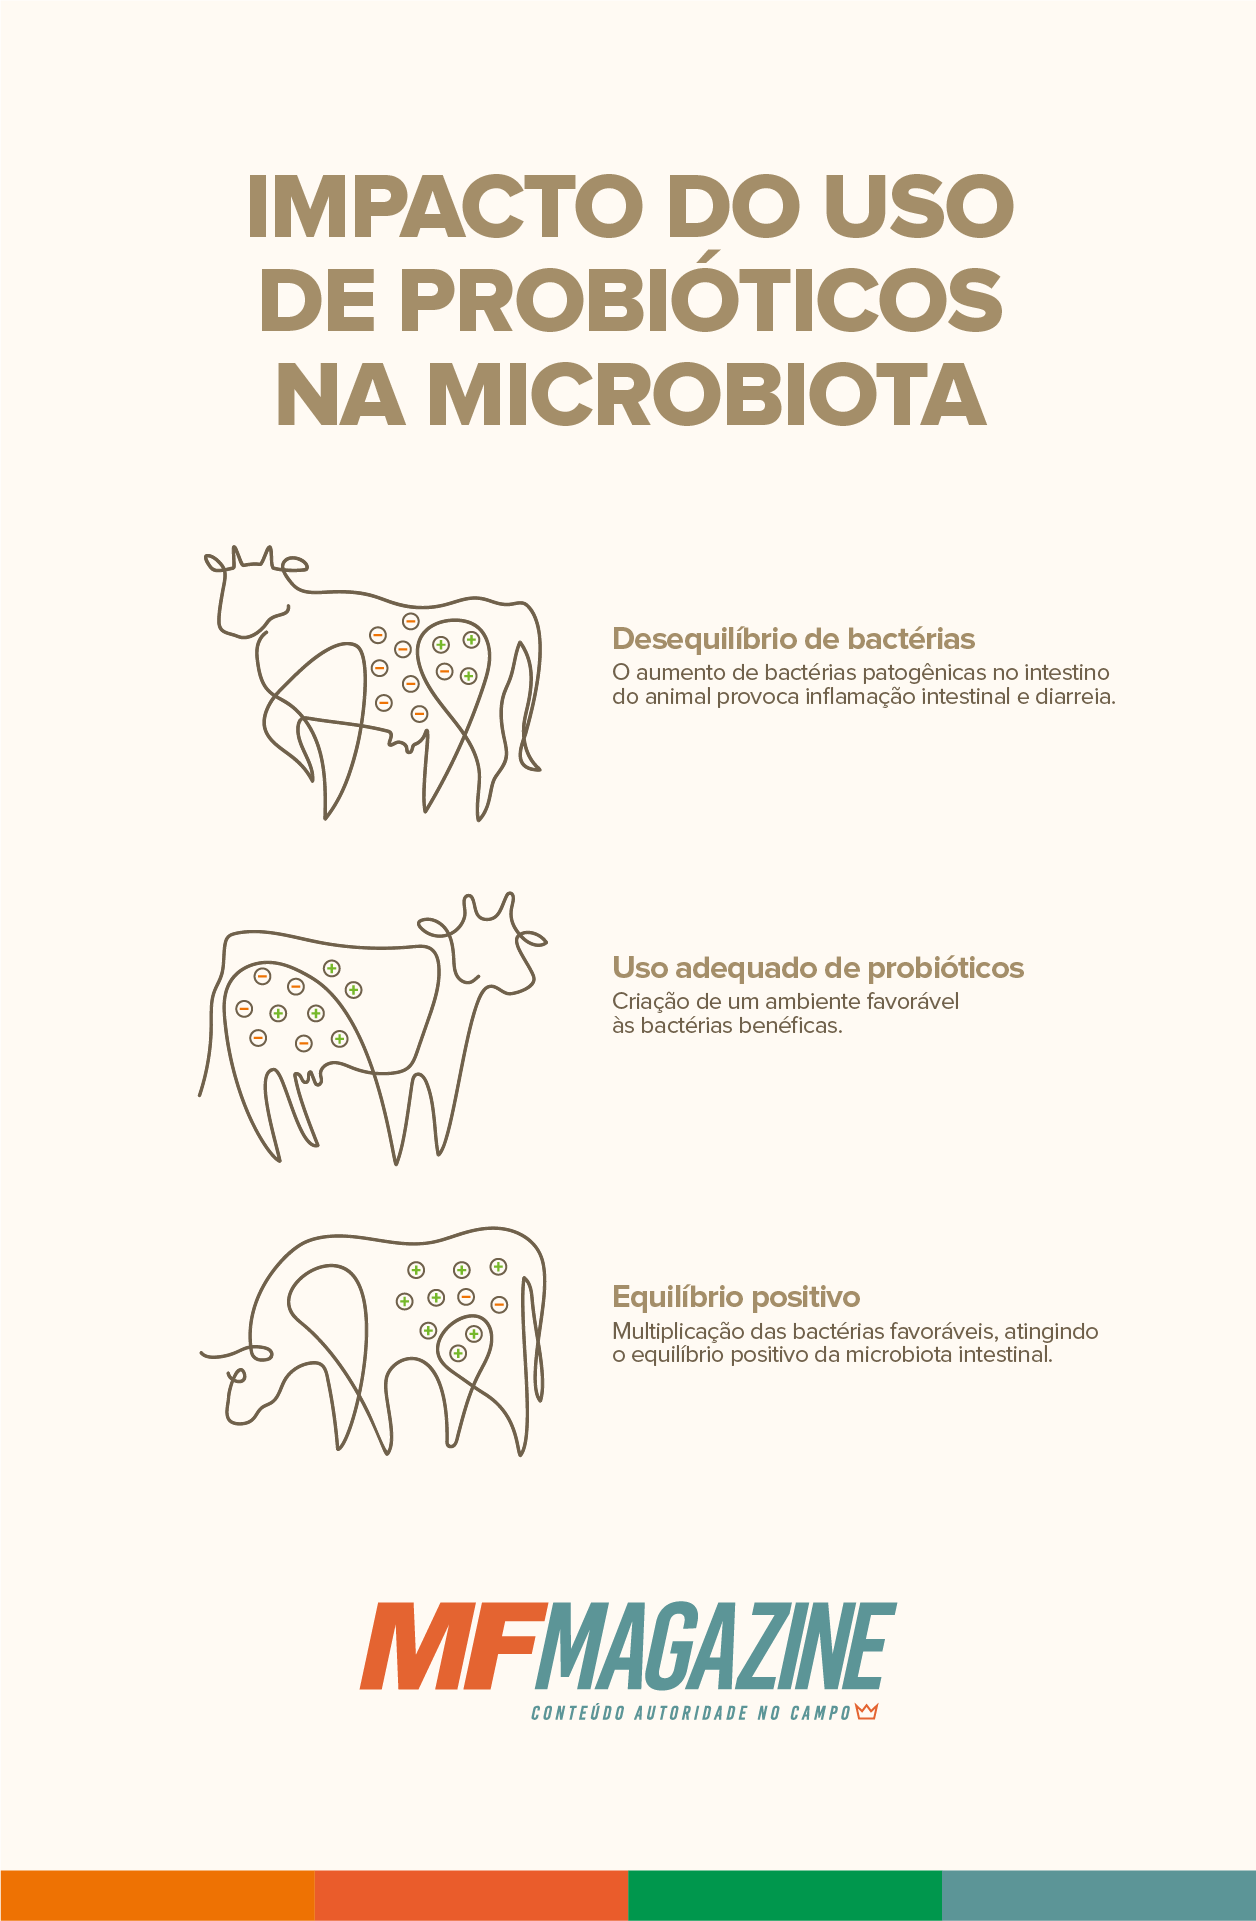 Infográfico demonstrando a evolução da composição da microbiota bovina de acordo com a administração de probióticos